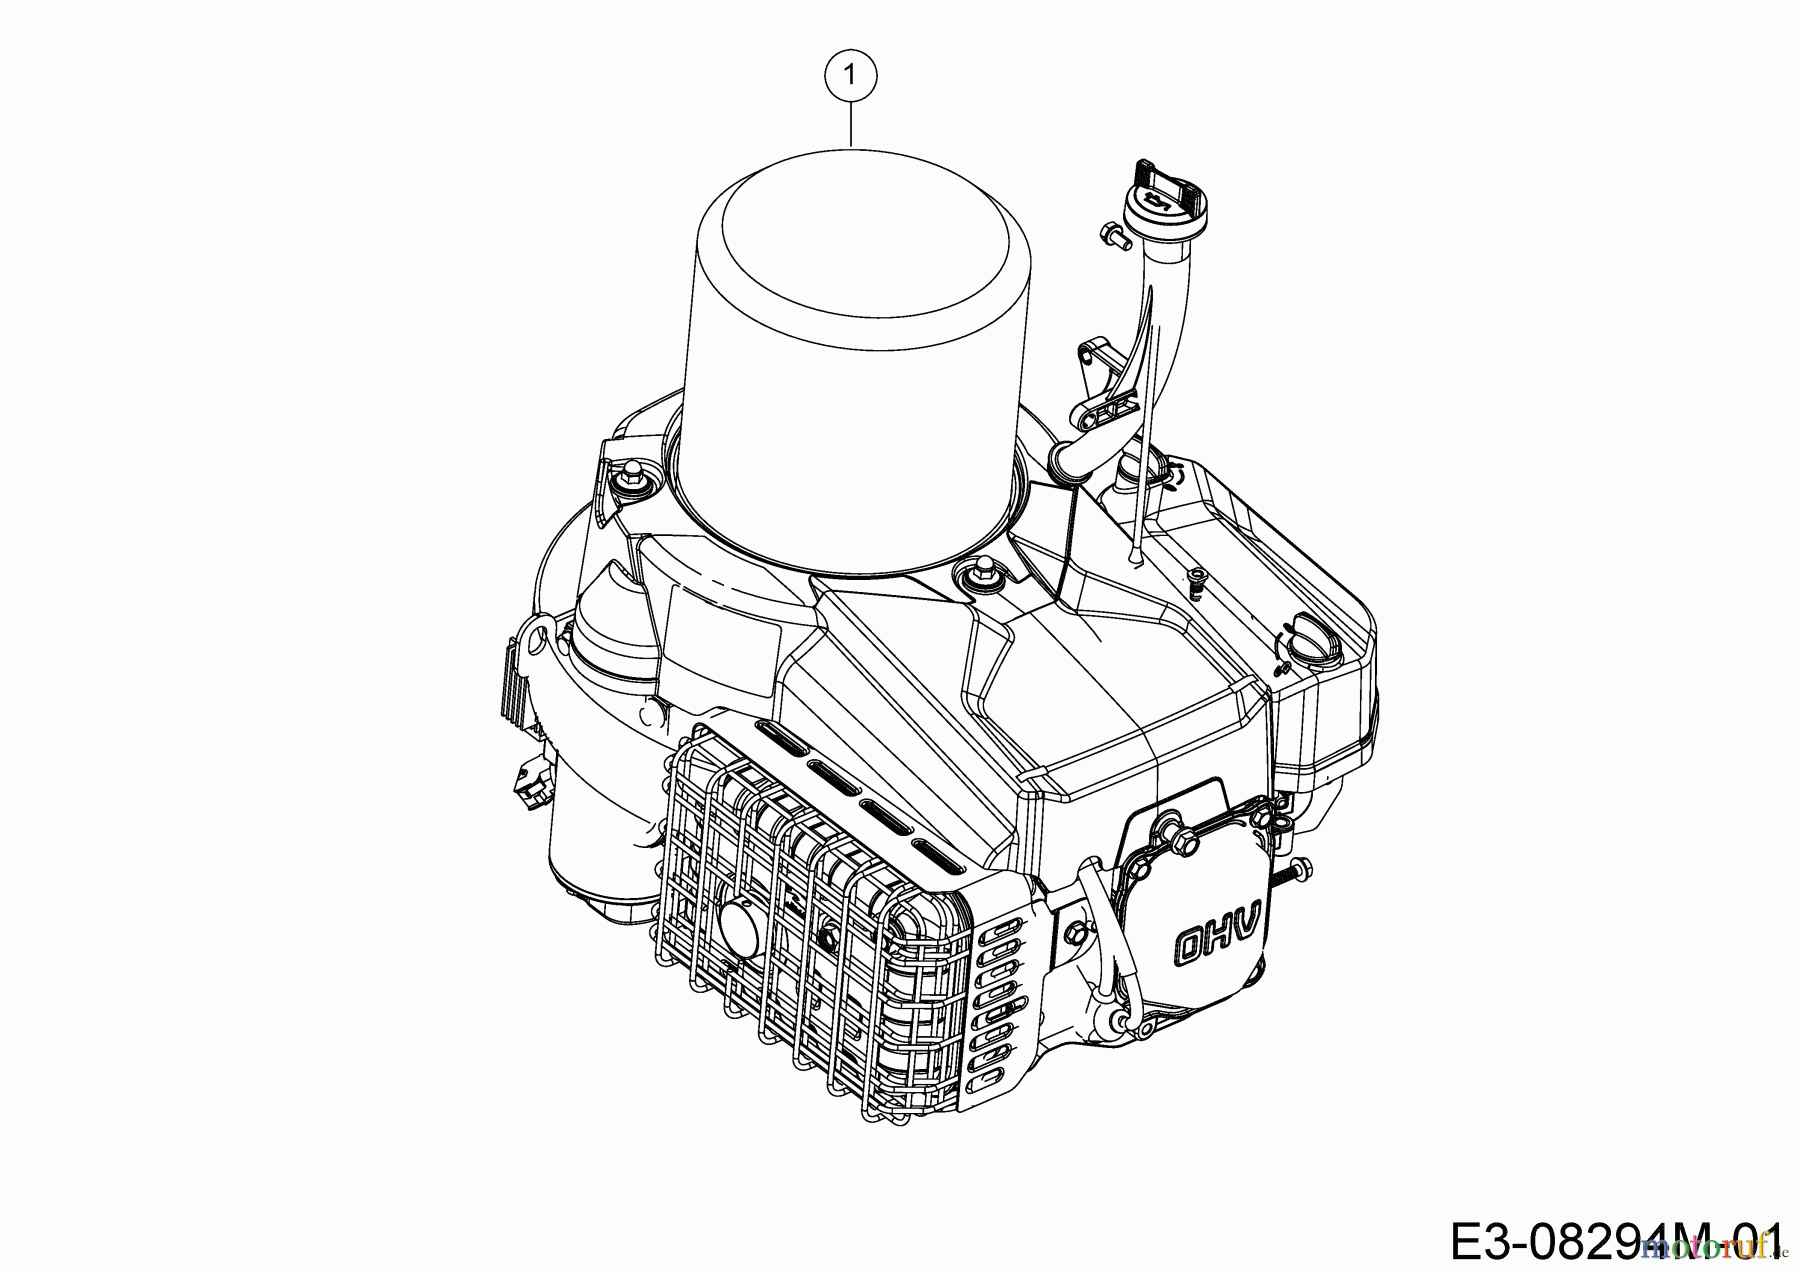  Cub Cadet Lawn tractors LR2 MR76 13A721HD603 (2021) Engine